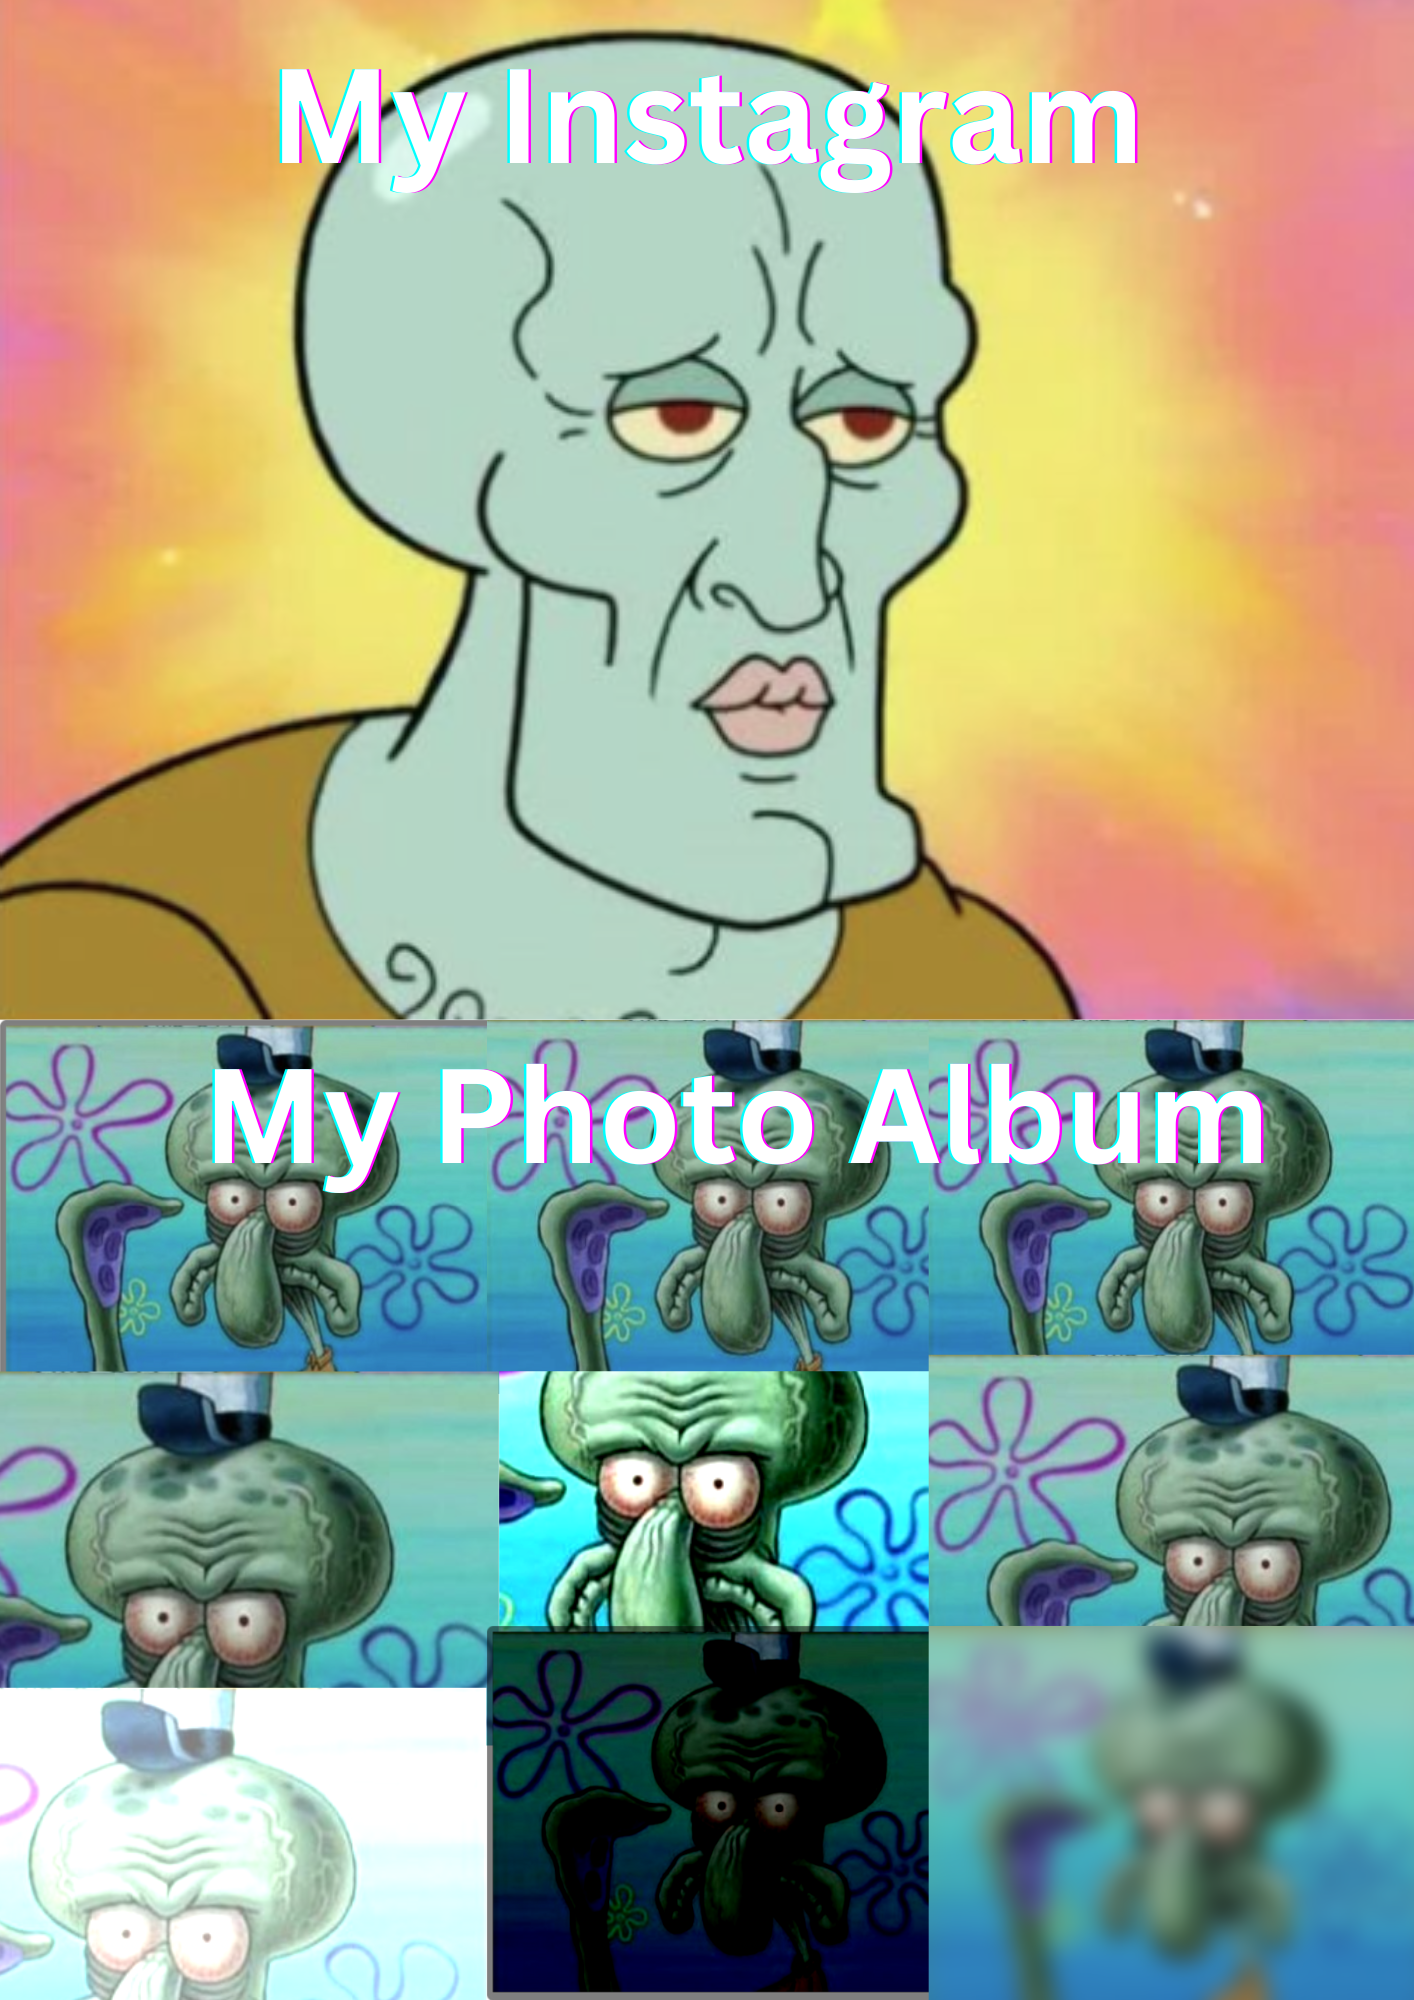 Me vs my photo album.